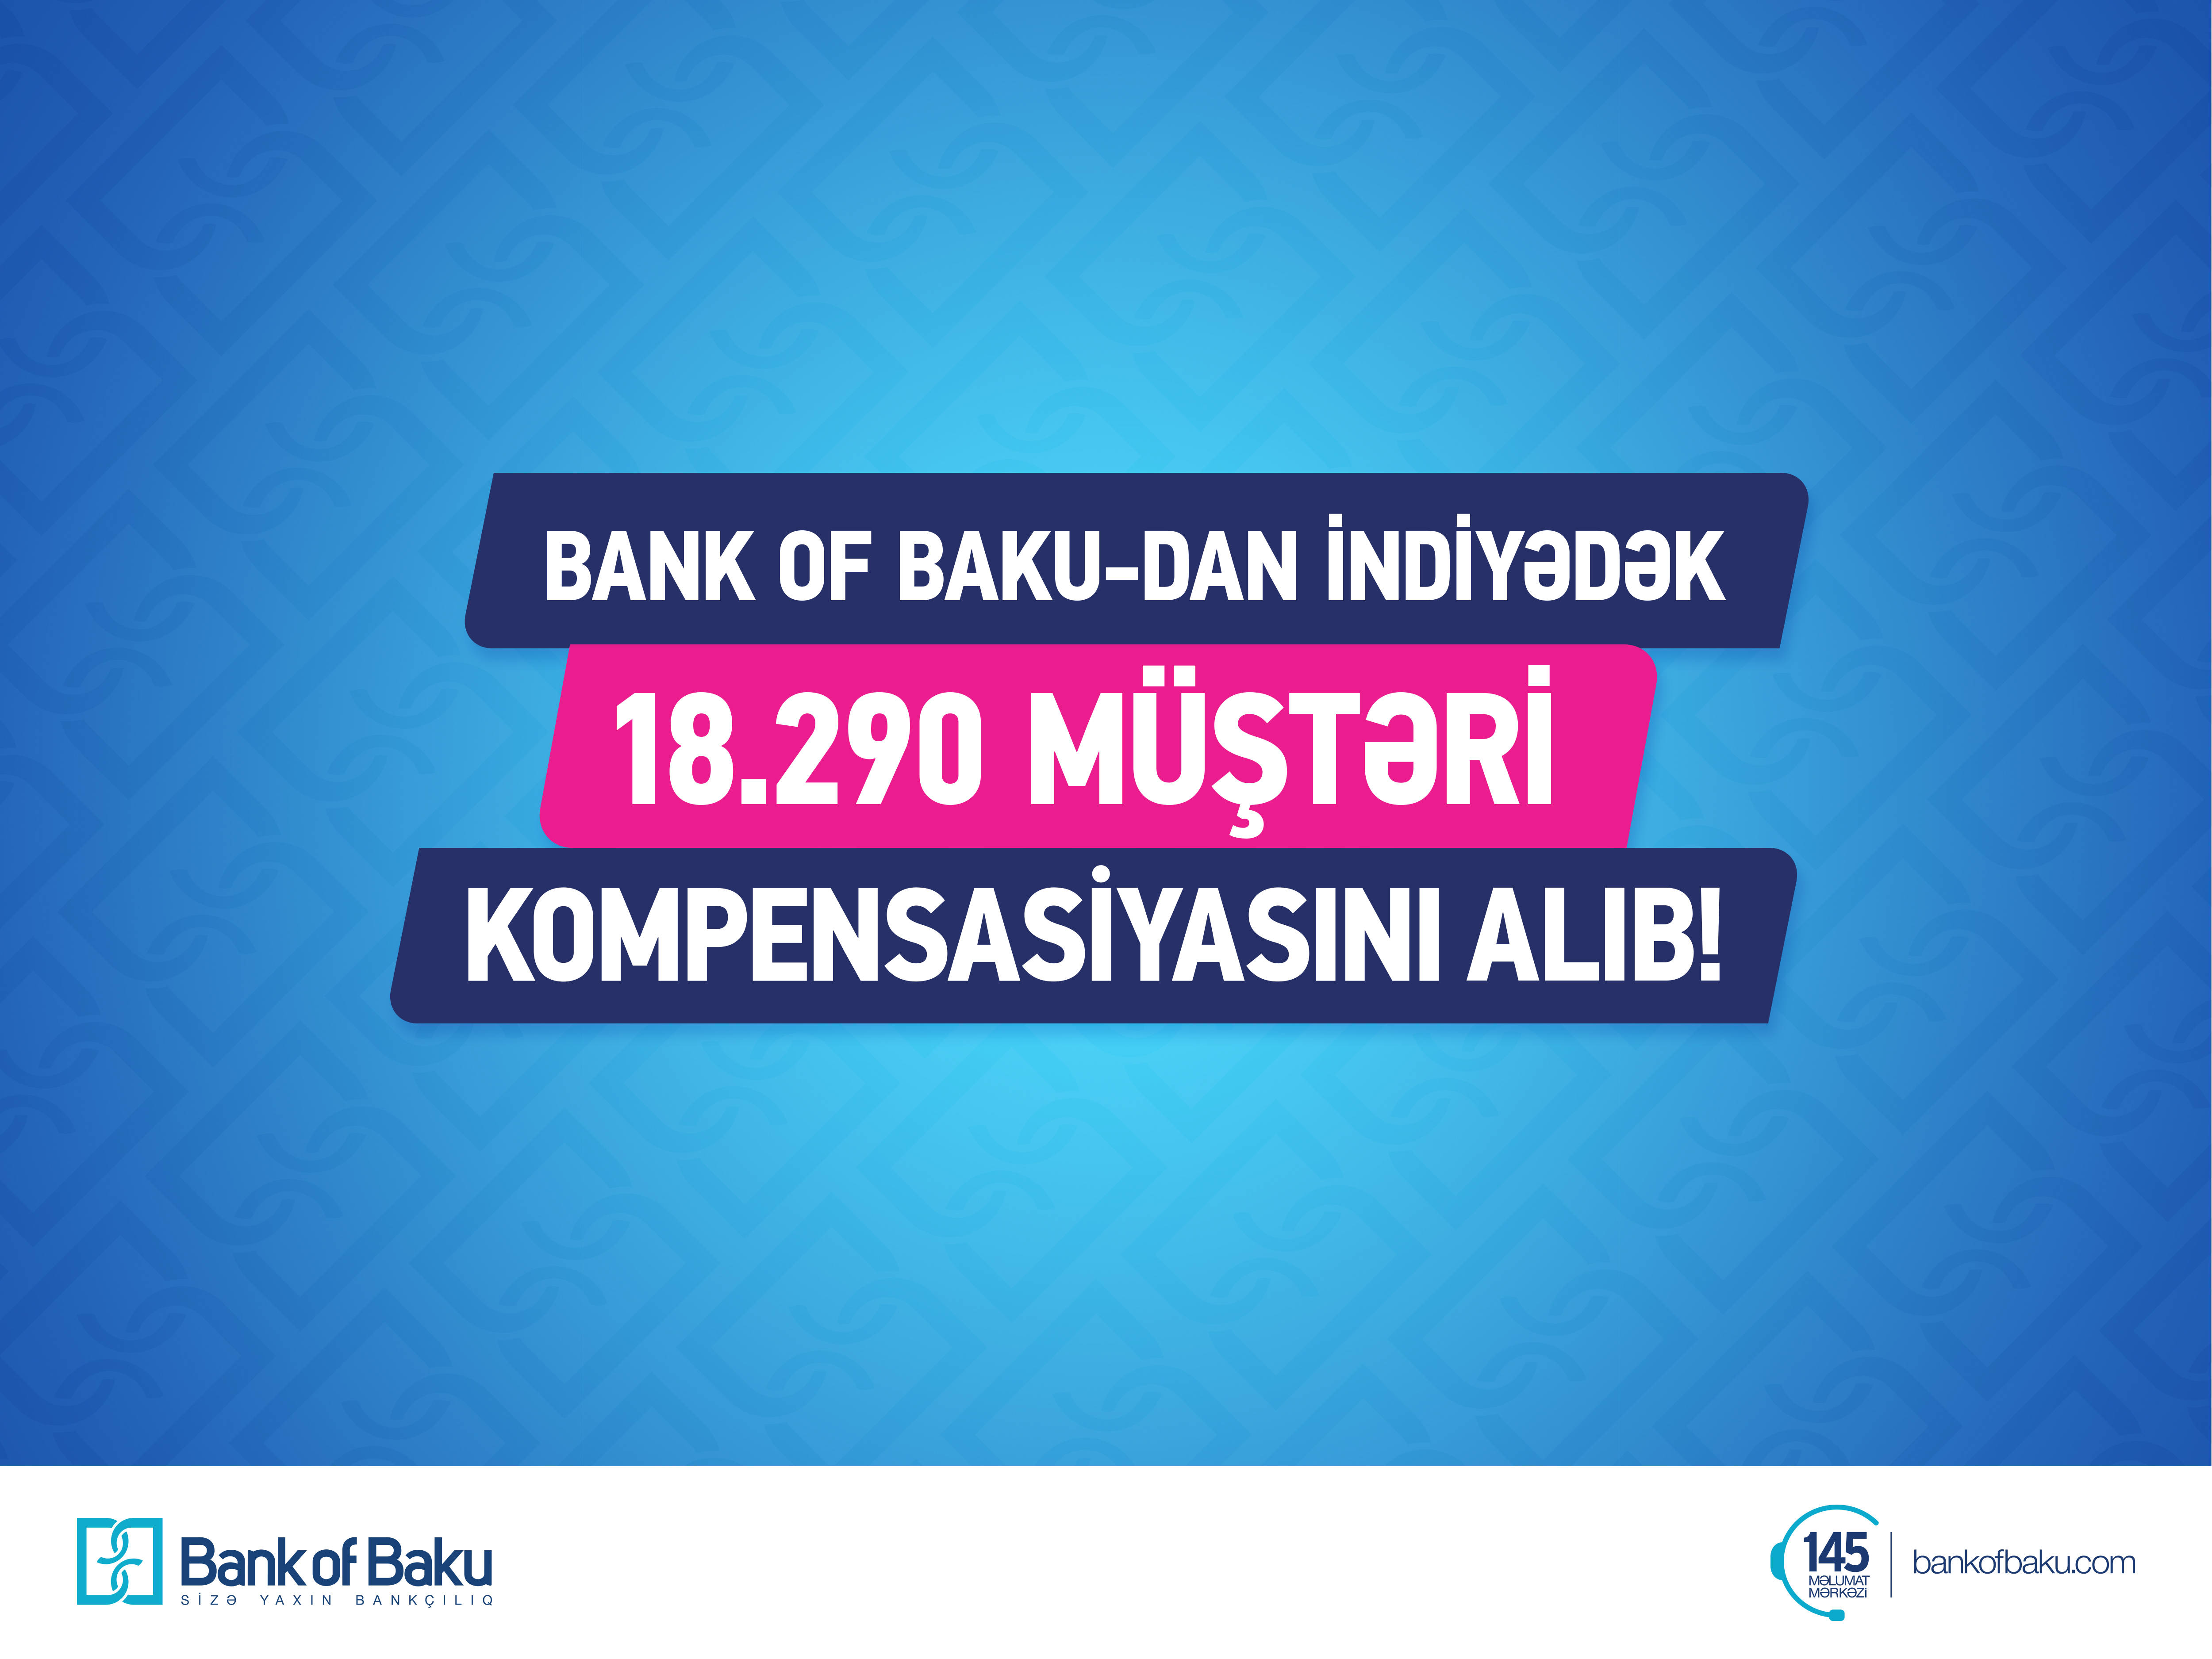 Bank of Baku indiyədək 18.290 müştərinin kompensasiyasını ödəyib!